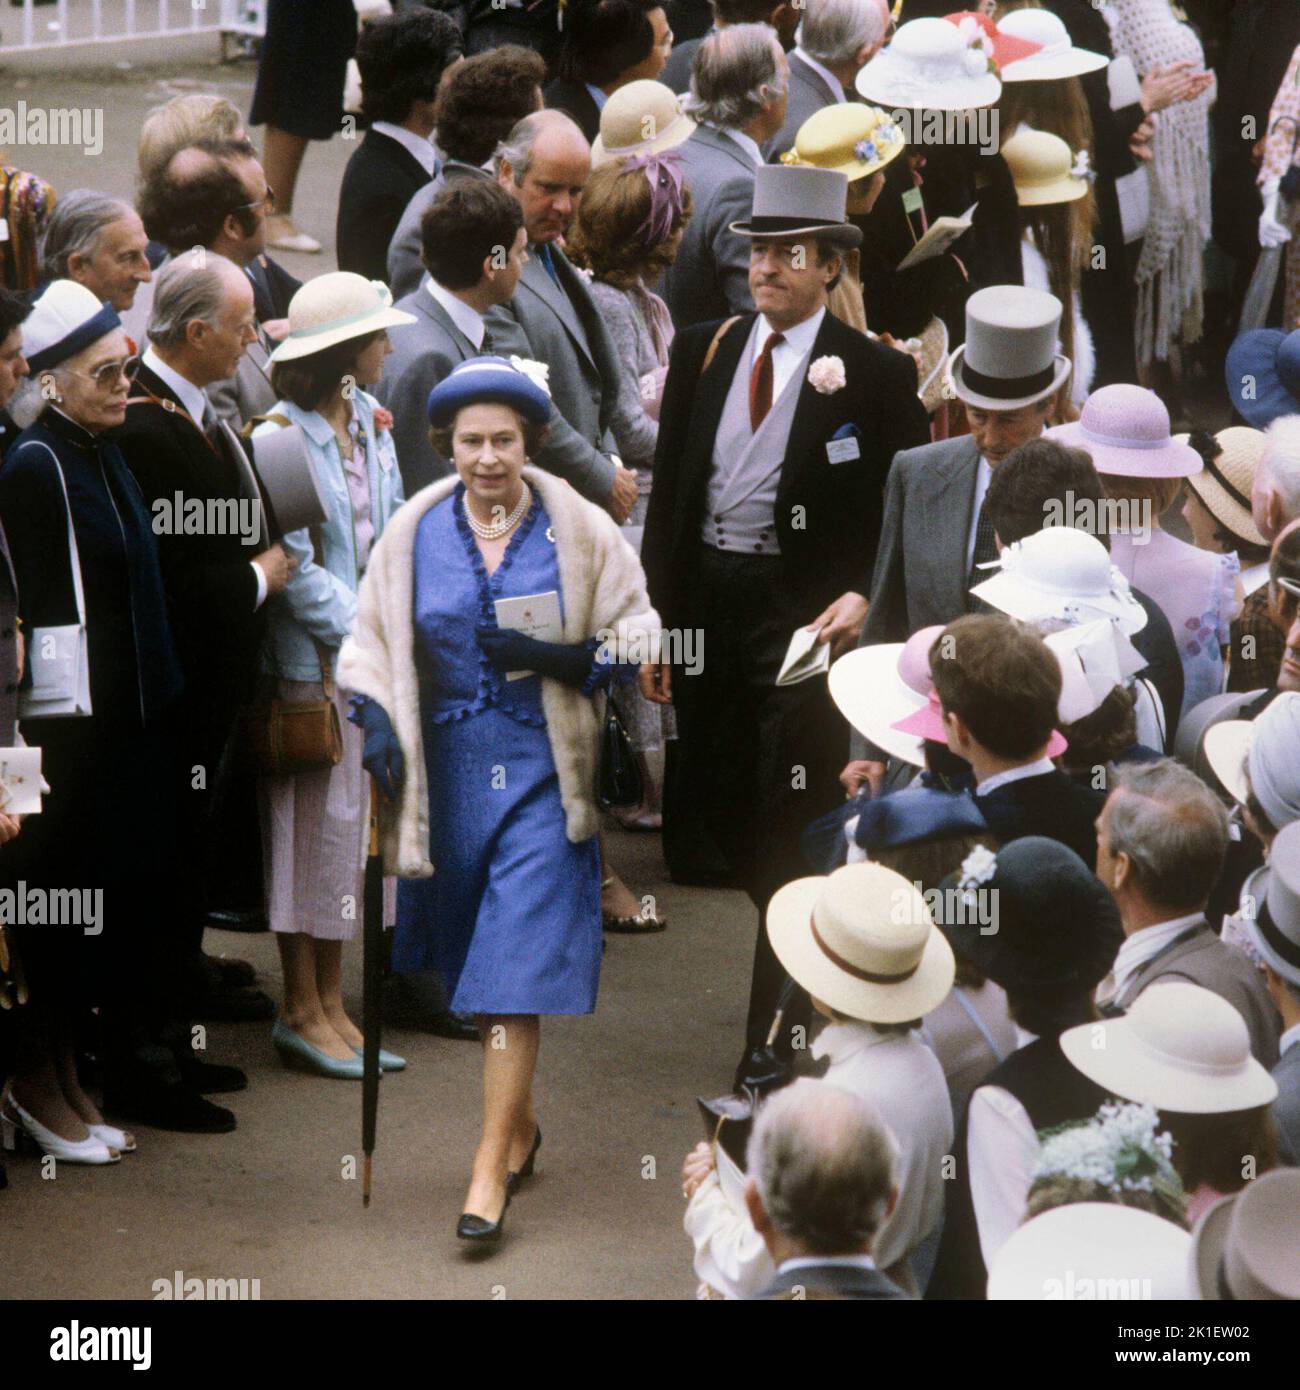 Foto de archivo de fecha 01/06/81 de la Reina Isabel II caminando entre las multitudes en la reunión de la carrera de Royal Ascot. Fecha de emisión: Domingo 18 de Septiembre de 2022.. El crédito de la foto debe decir: PA Wire Foto de stock